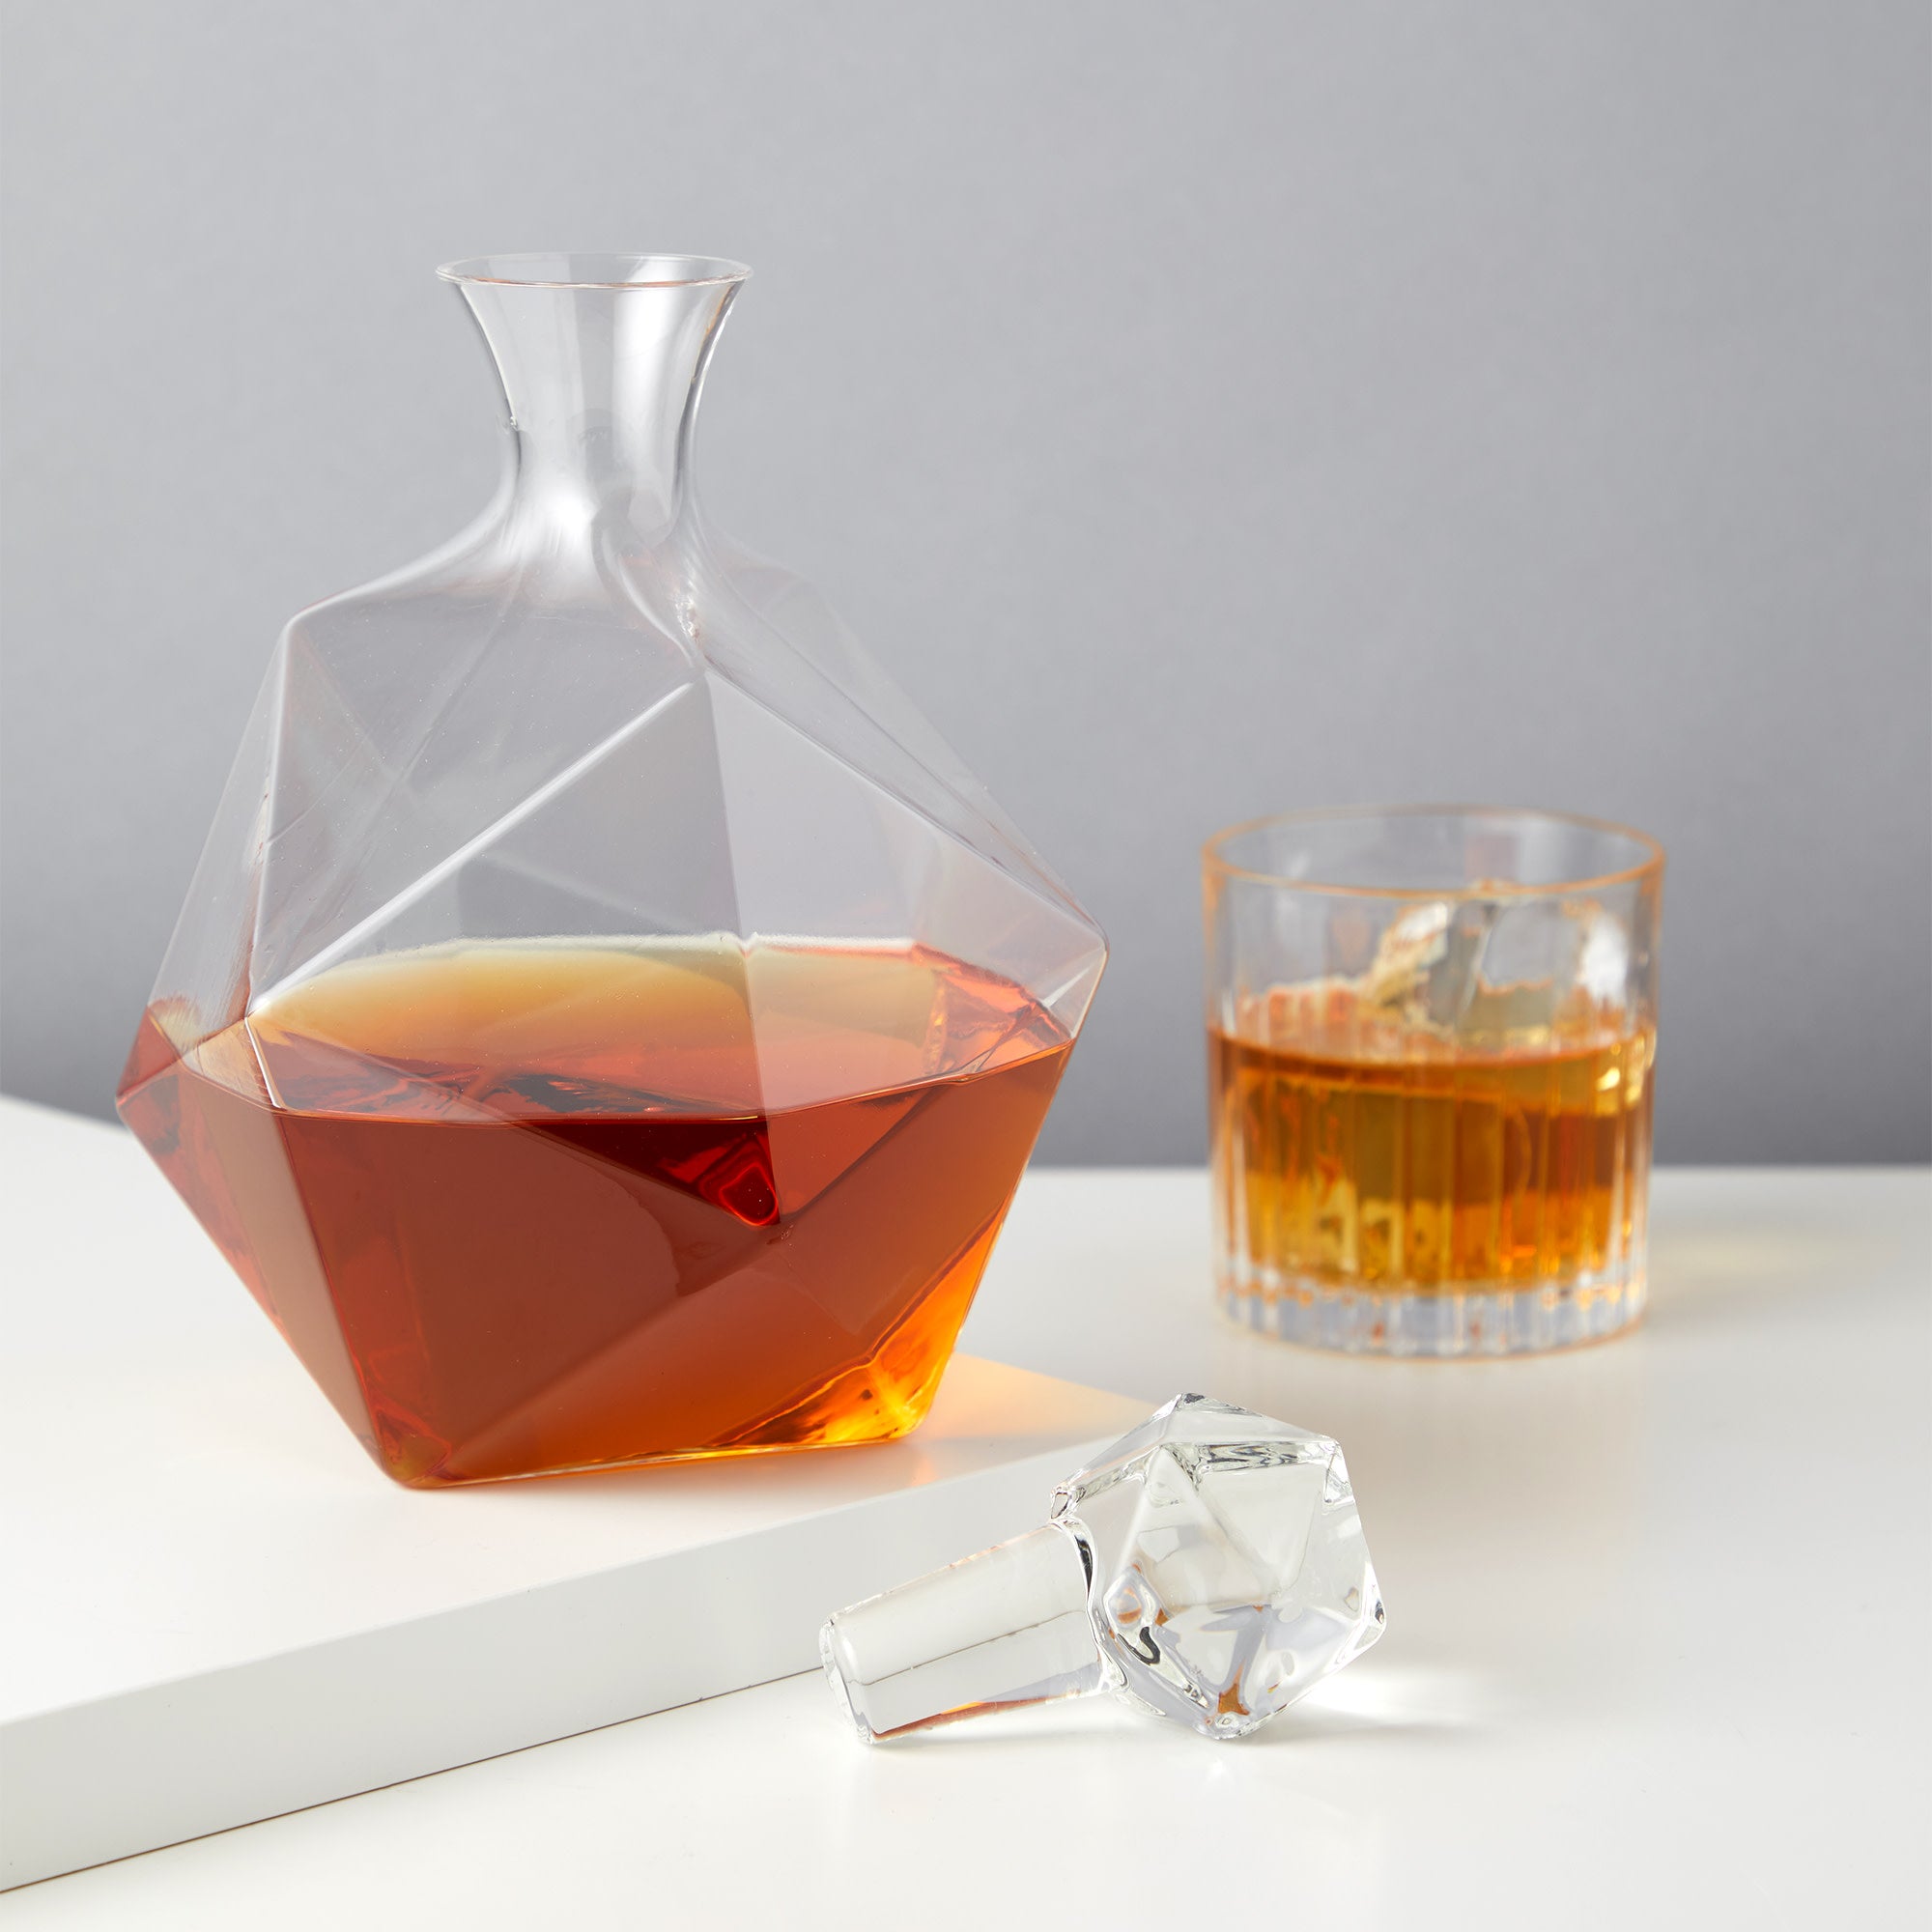 Whisky Decanter Wine Decanter Liquor Glass Container Scotch